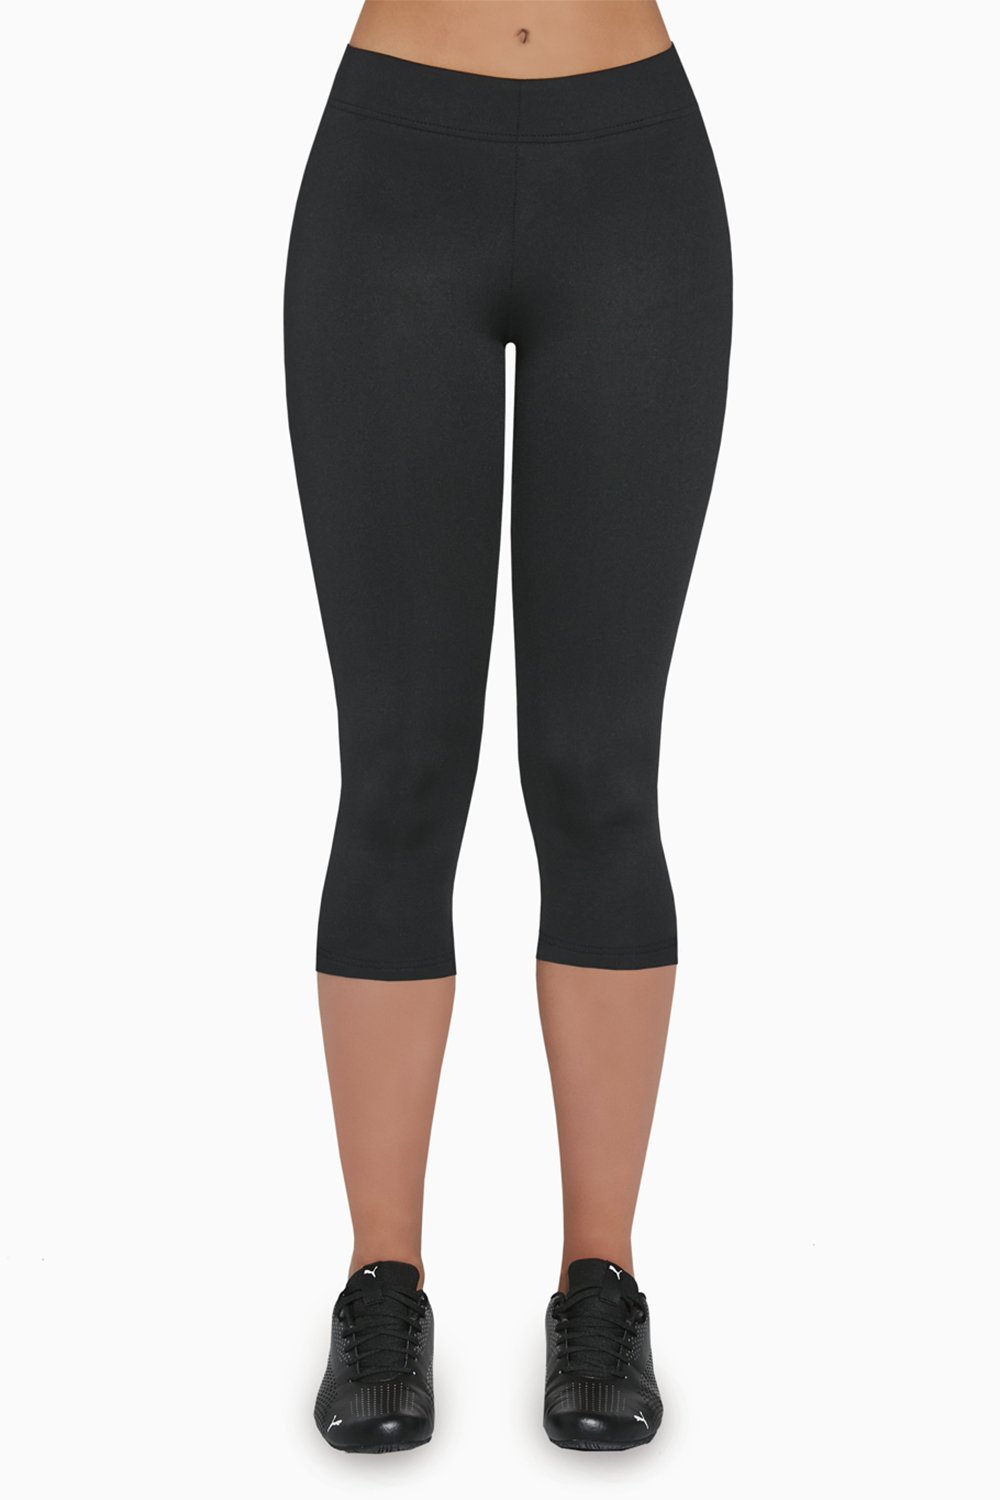 BasBlack Riley 70 - Plain black anti-cellulite capri length sports leggings.